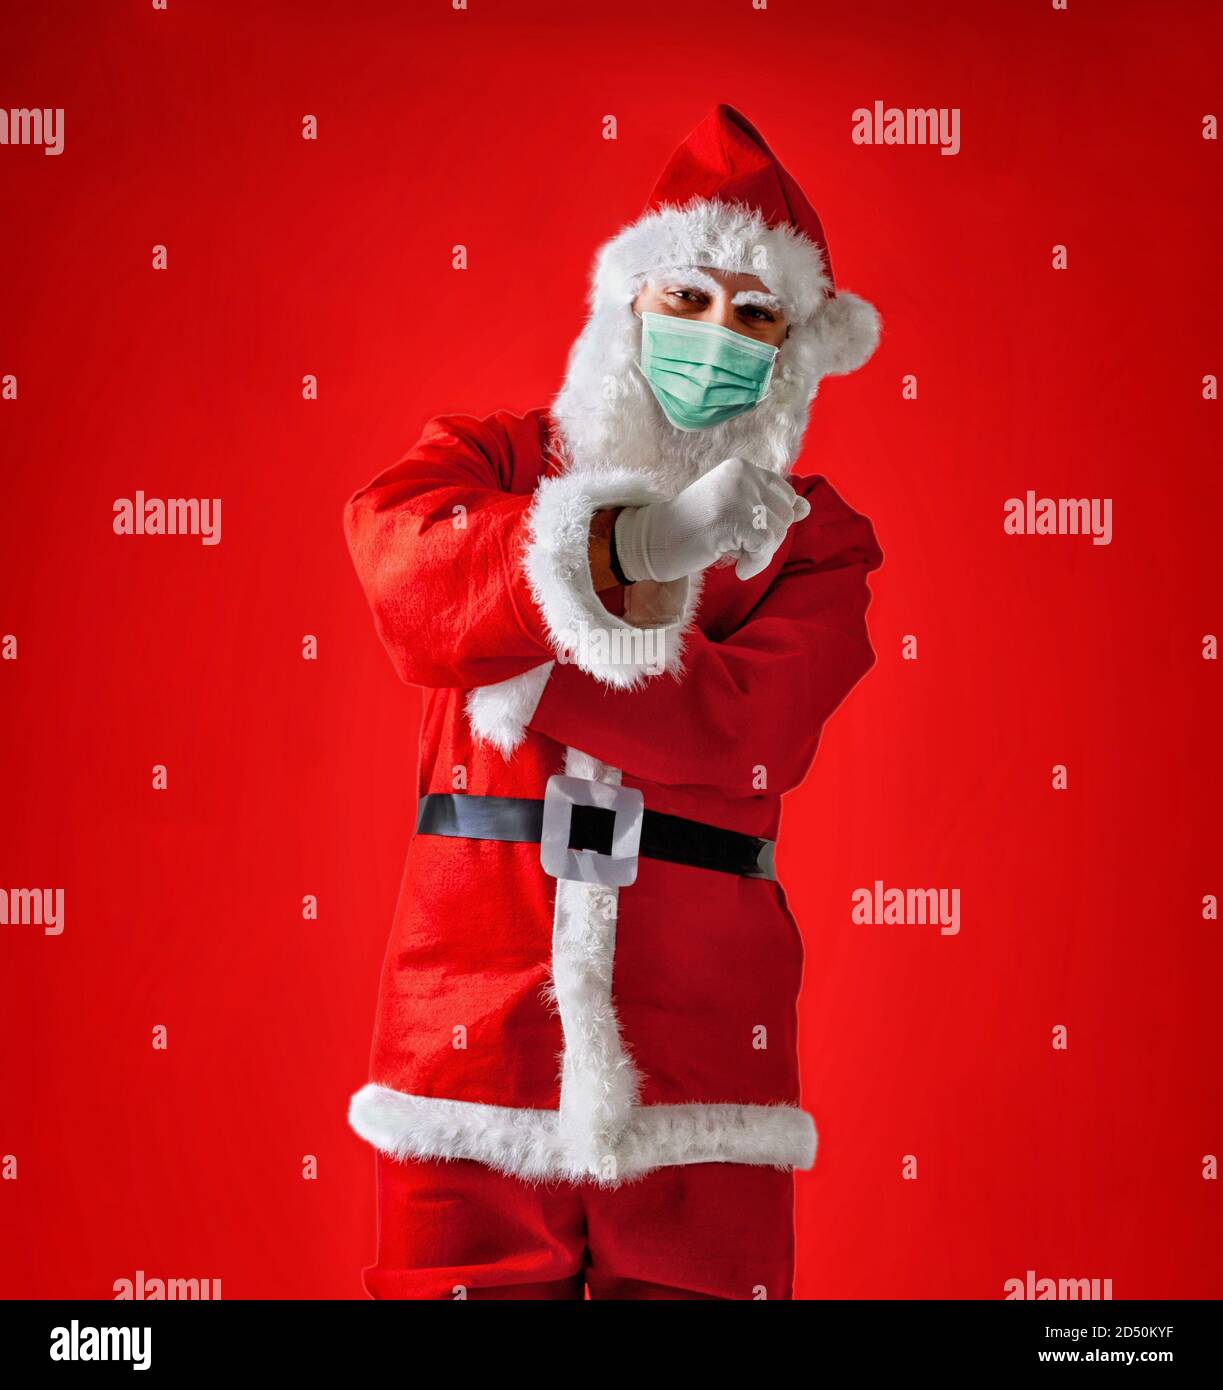 Santa Claus faisant un parapluie italien geste portant le masque chirurgical sur fond rouge. Banque D'Images